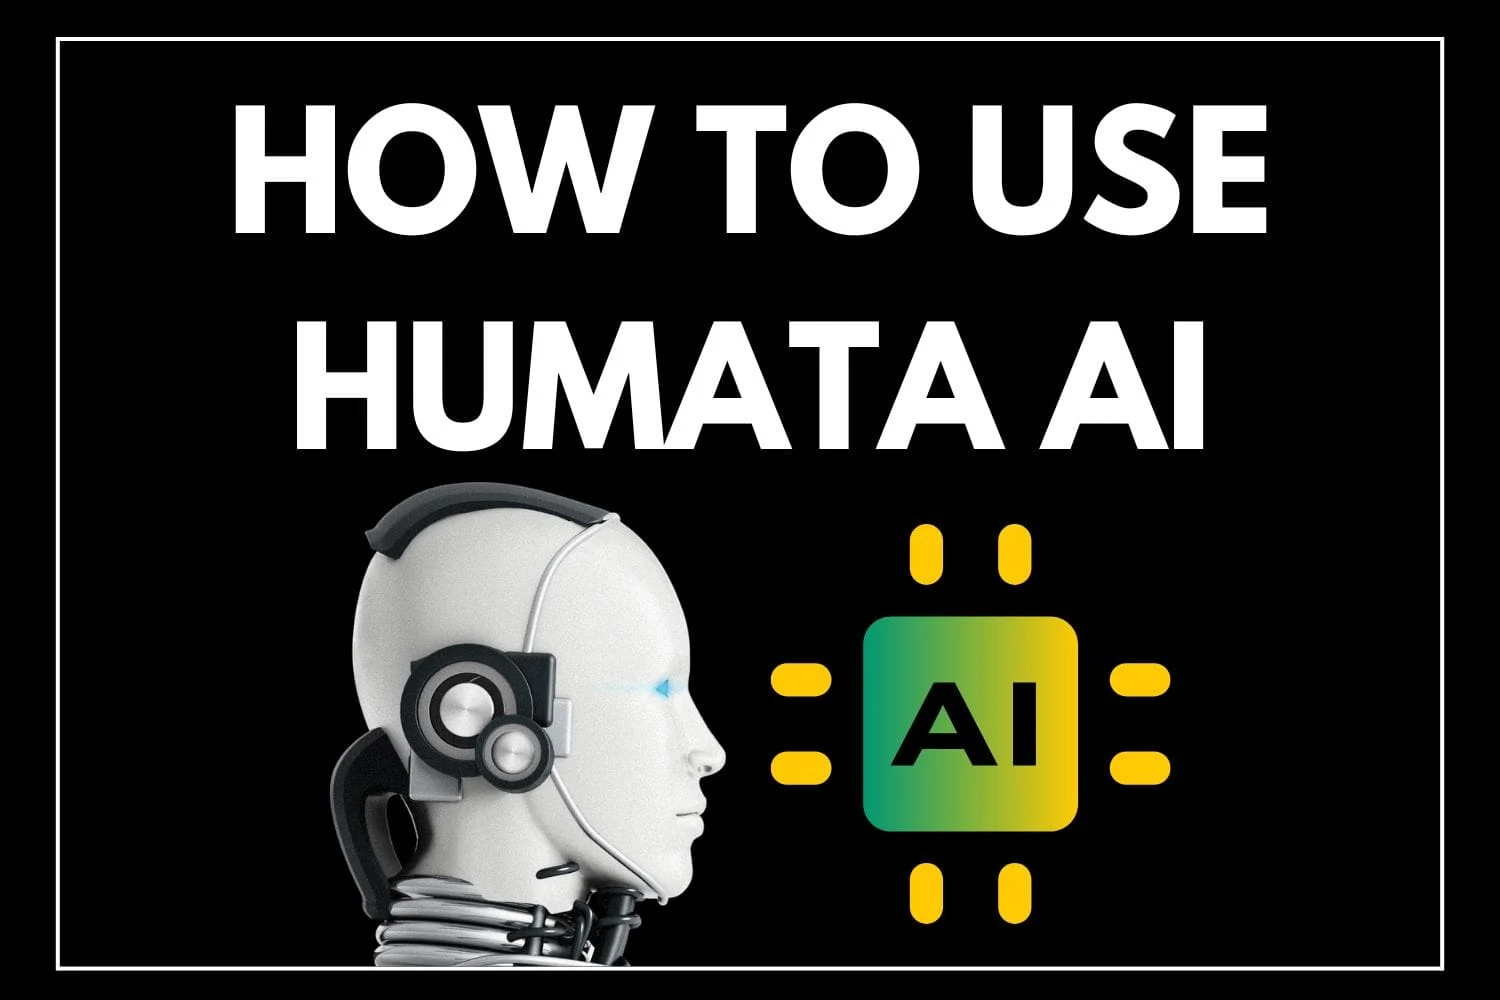 HOW TO USE HUMATA AI?